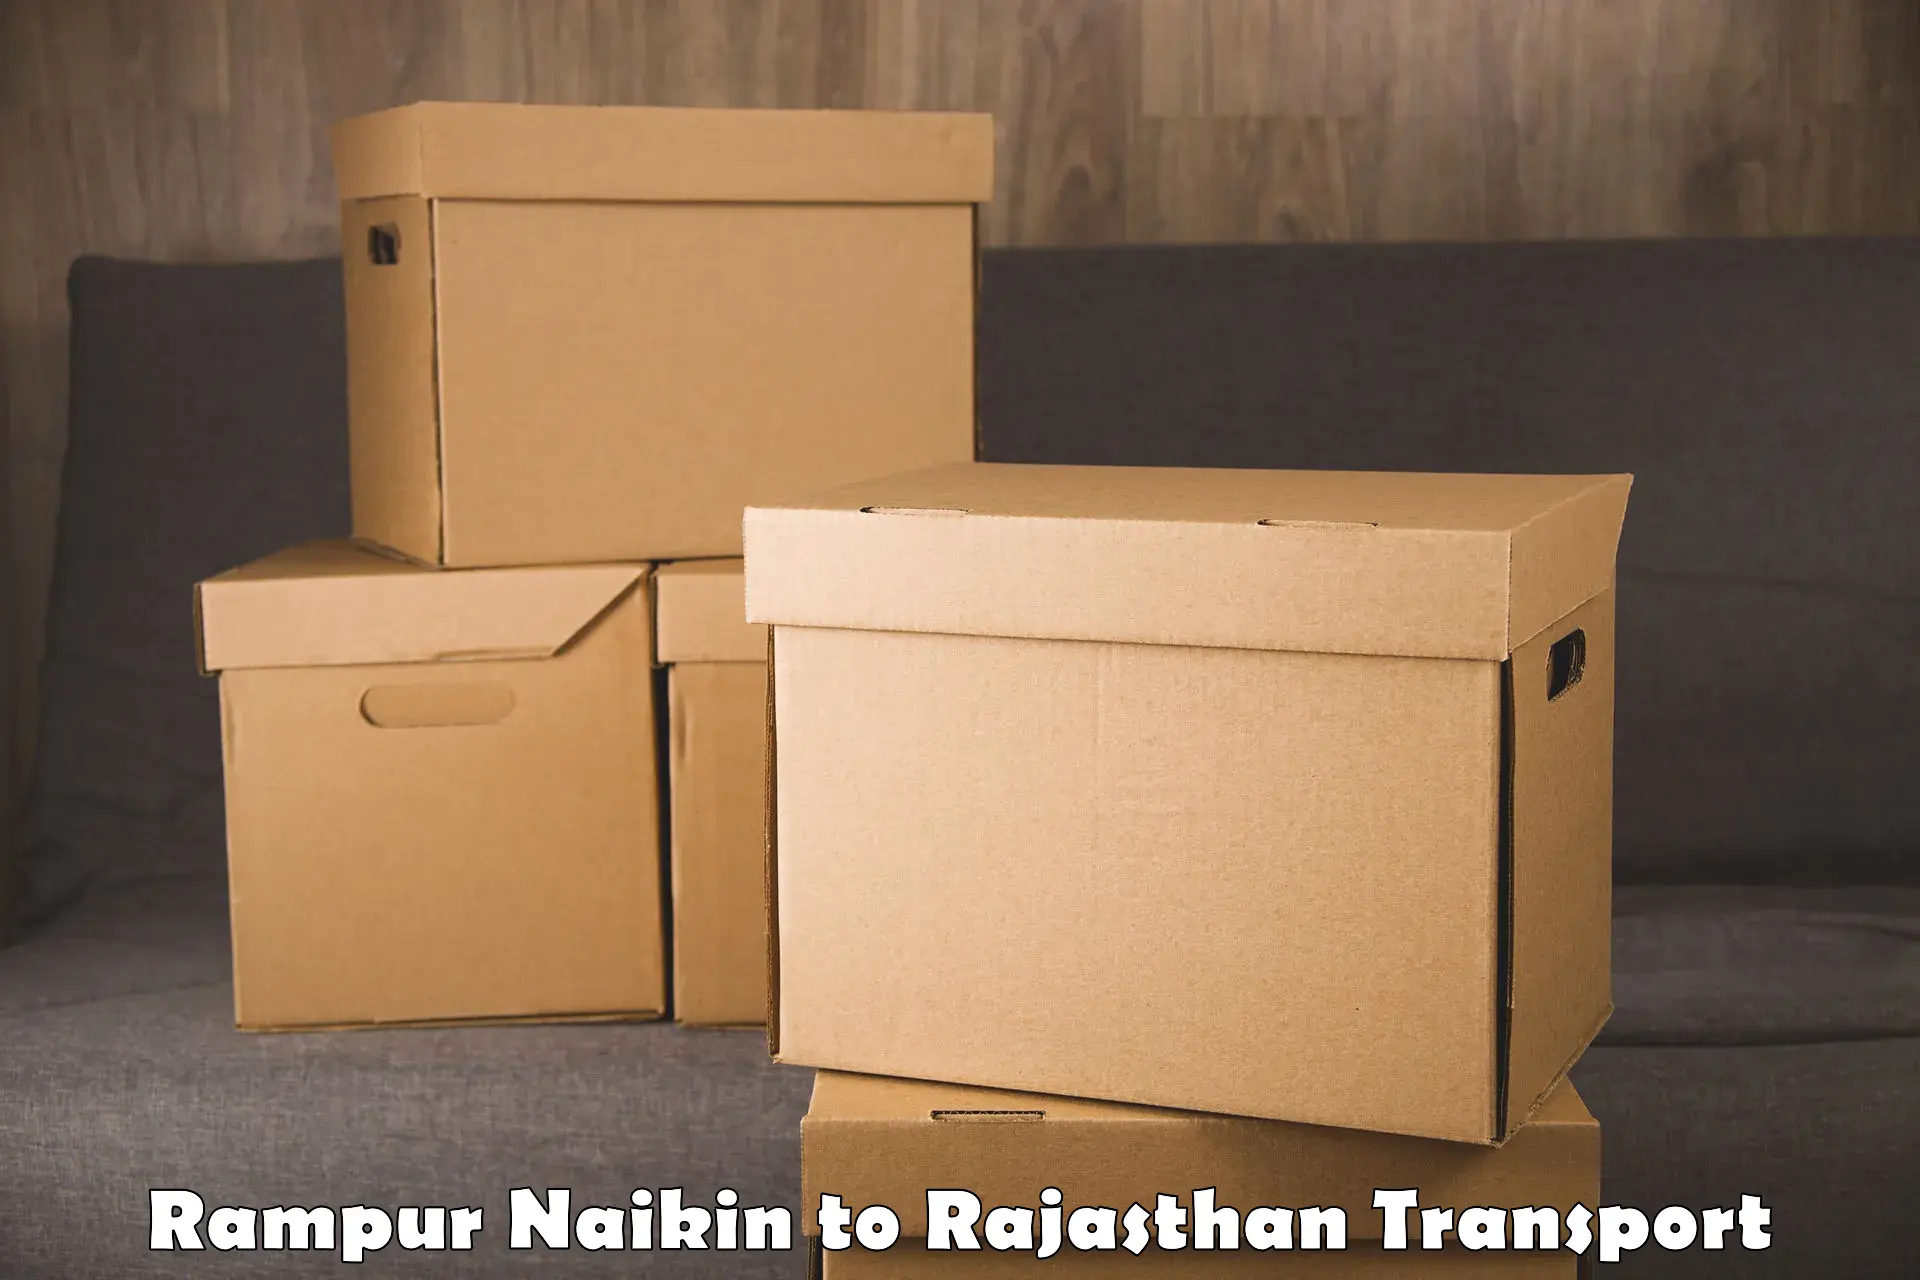 Daily transport service Rampur Naikin to Shahpura Jaipur